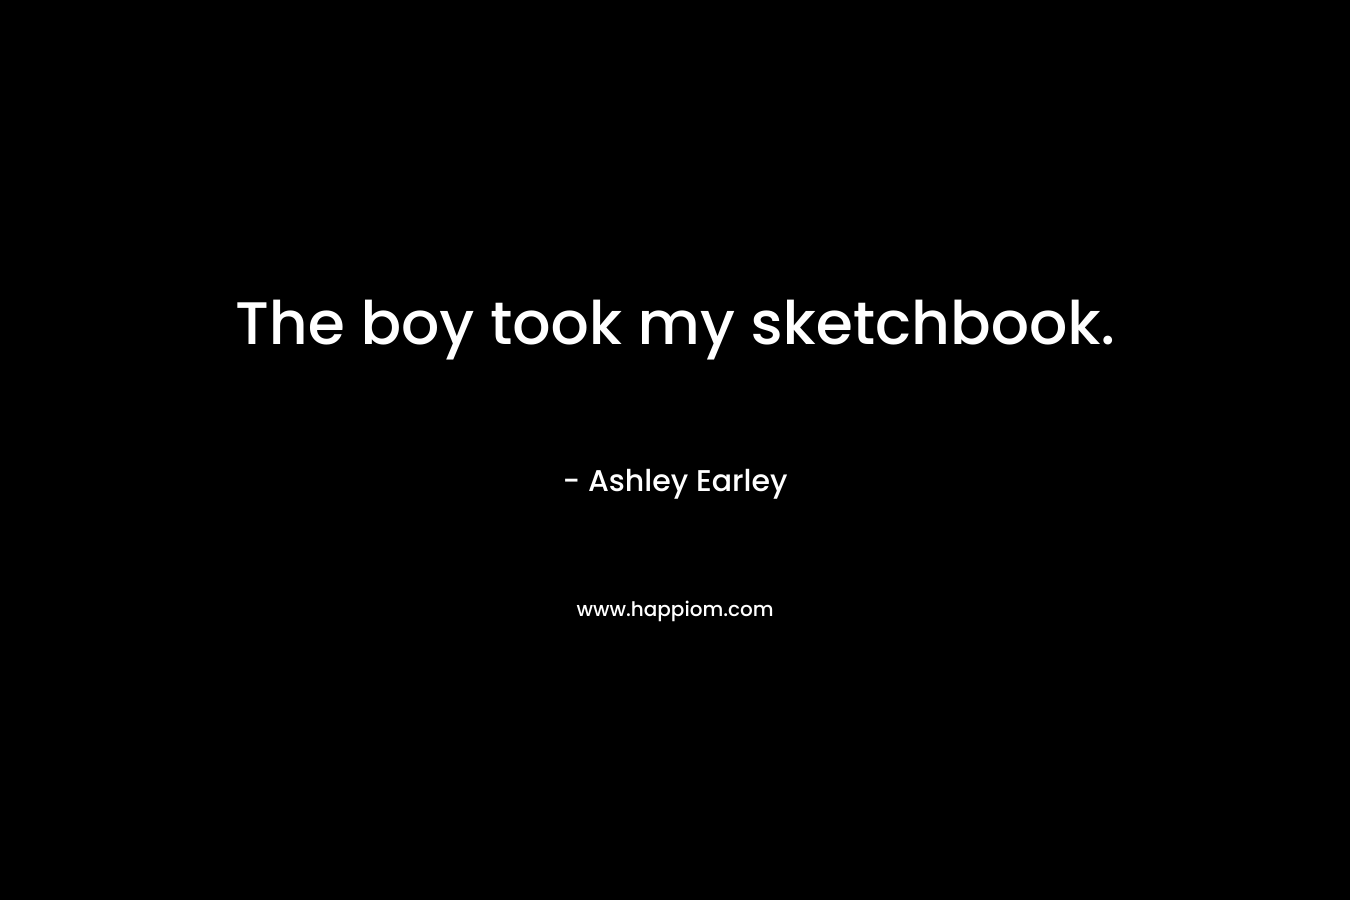 The boy took my sketchbook.